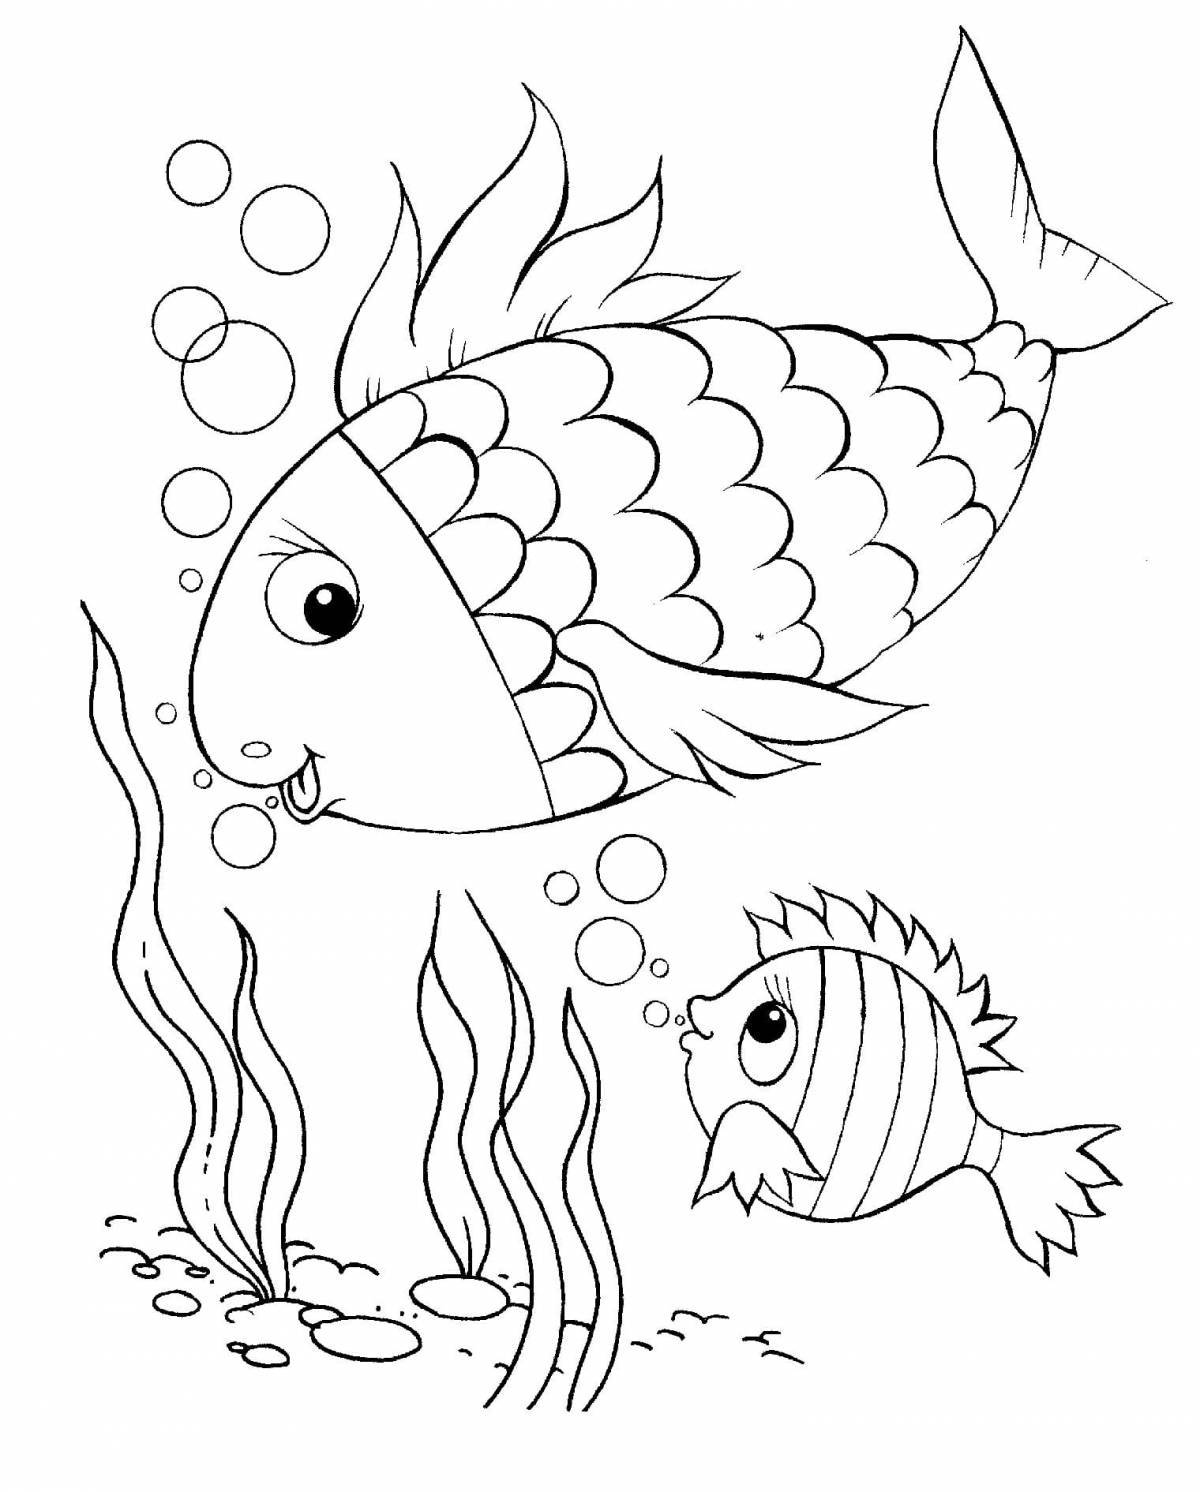 Смелая рыбка-раскраска для детей 4-5 лет